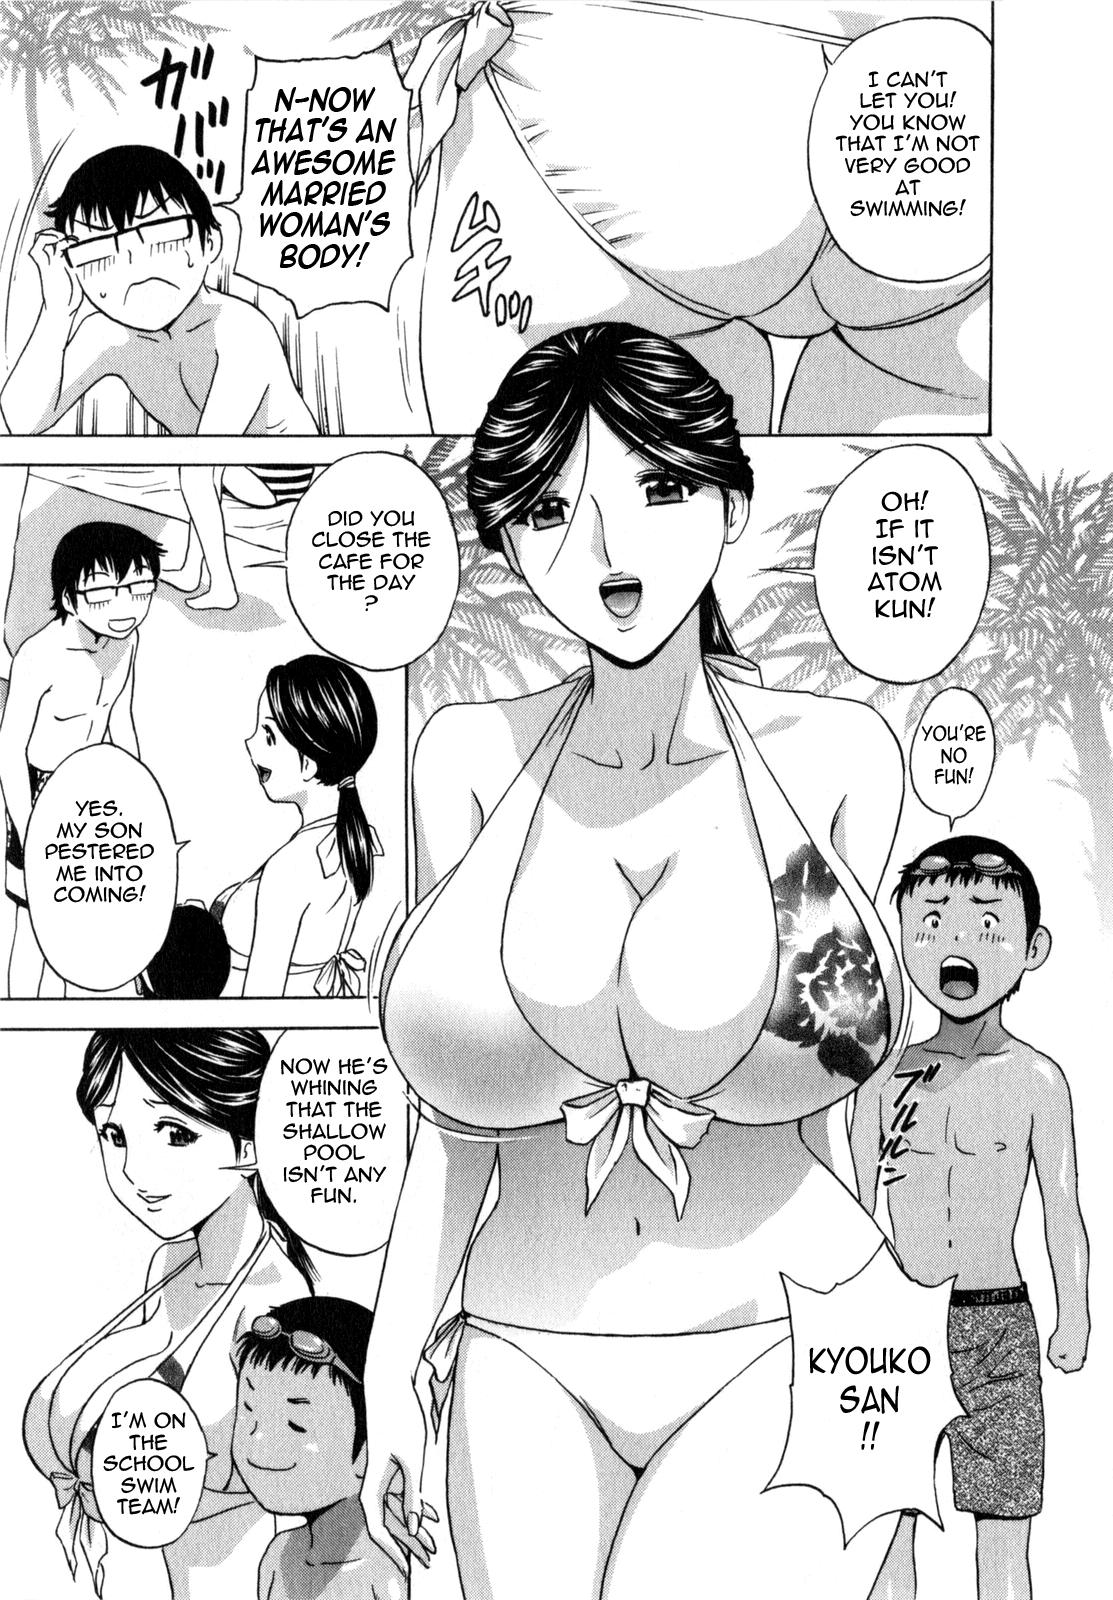 Manga no youna Hitozuma to no Hibi - Days with Married Women such as Comics. 121